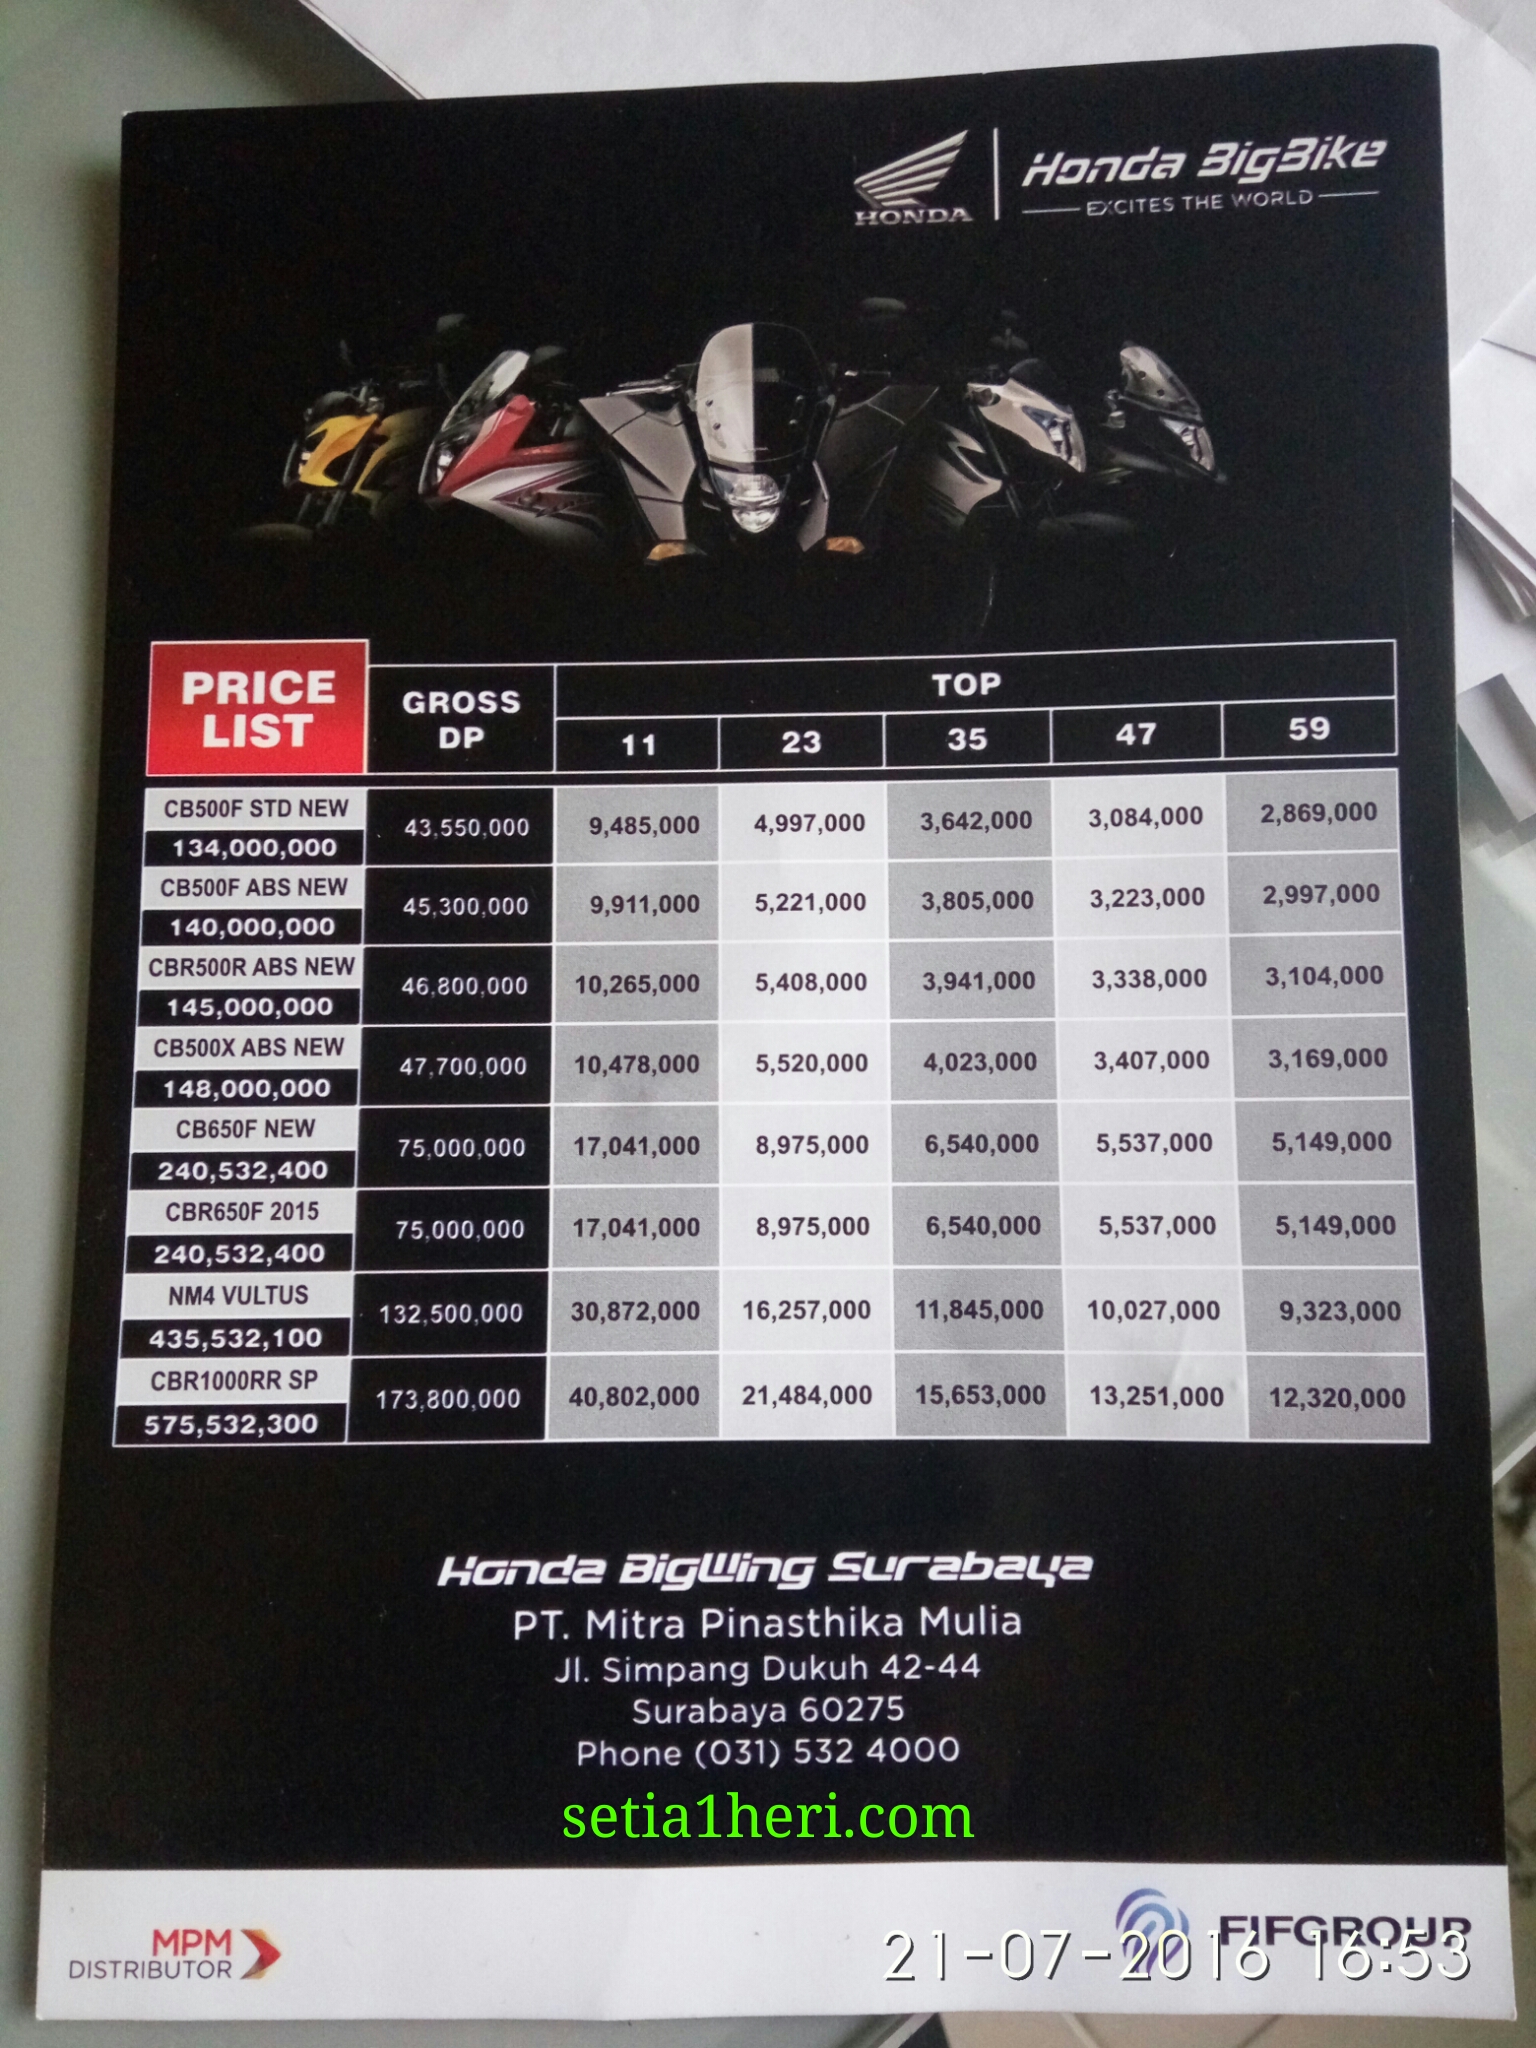 harga moge atau bigbike honda di Surabaya Jawa timur tahun 2016